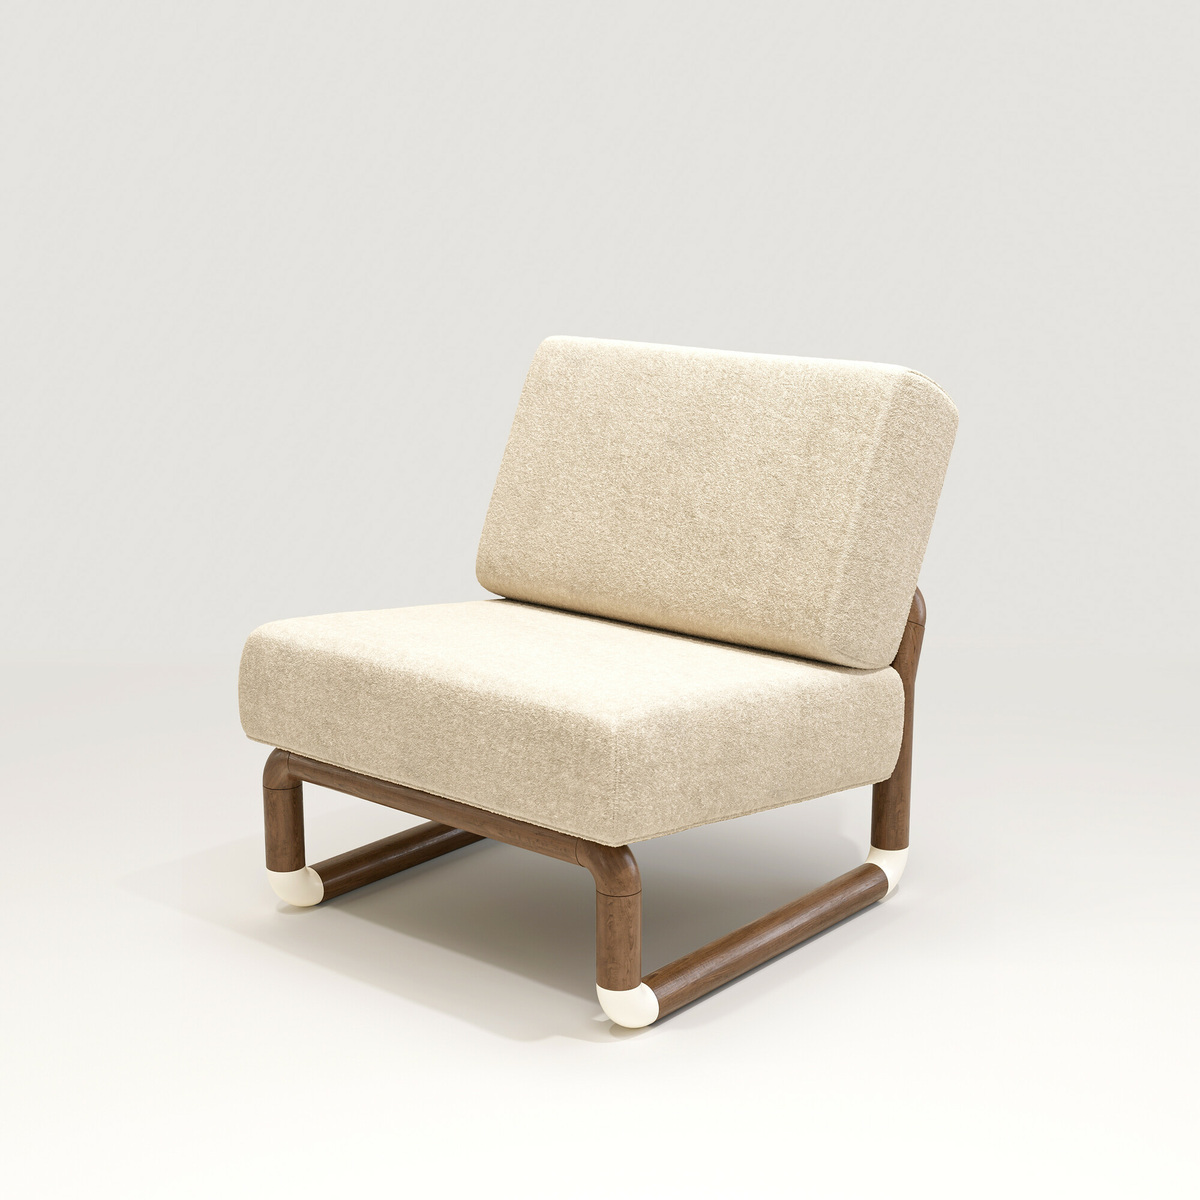 Fireside chair Nico, Imprimé - L71 x P82 x H76,8 cm - Noyer/Coton - image 23